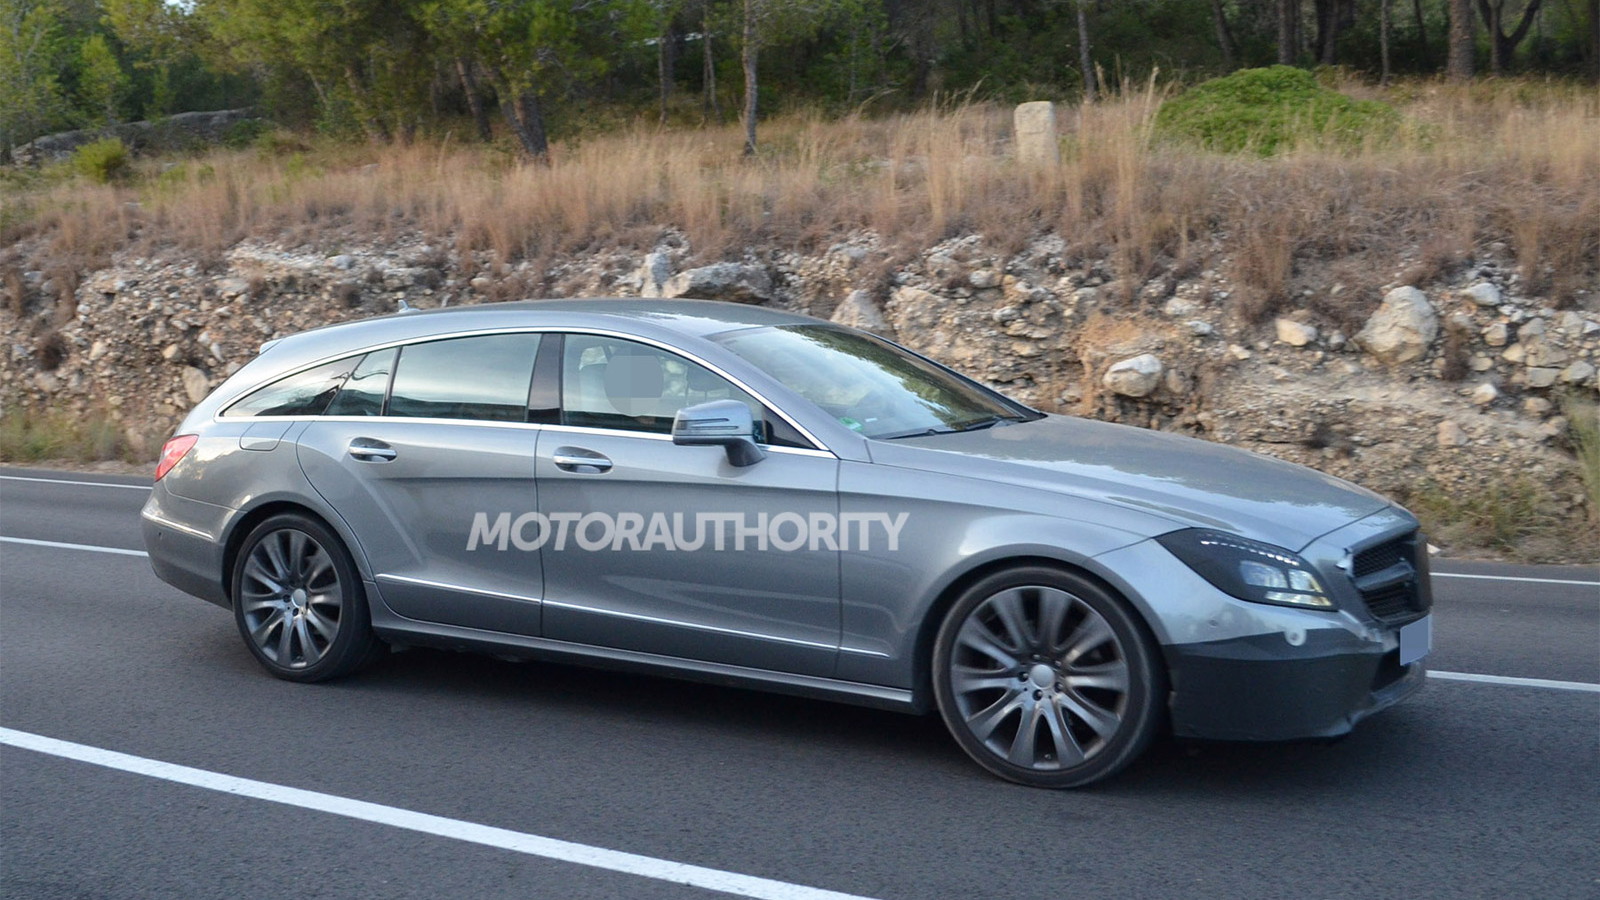 2015 Mercedes-Benz CLS Shooting Brake facelift spy shots